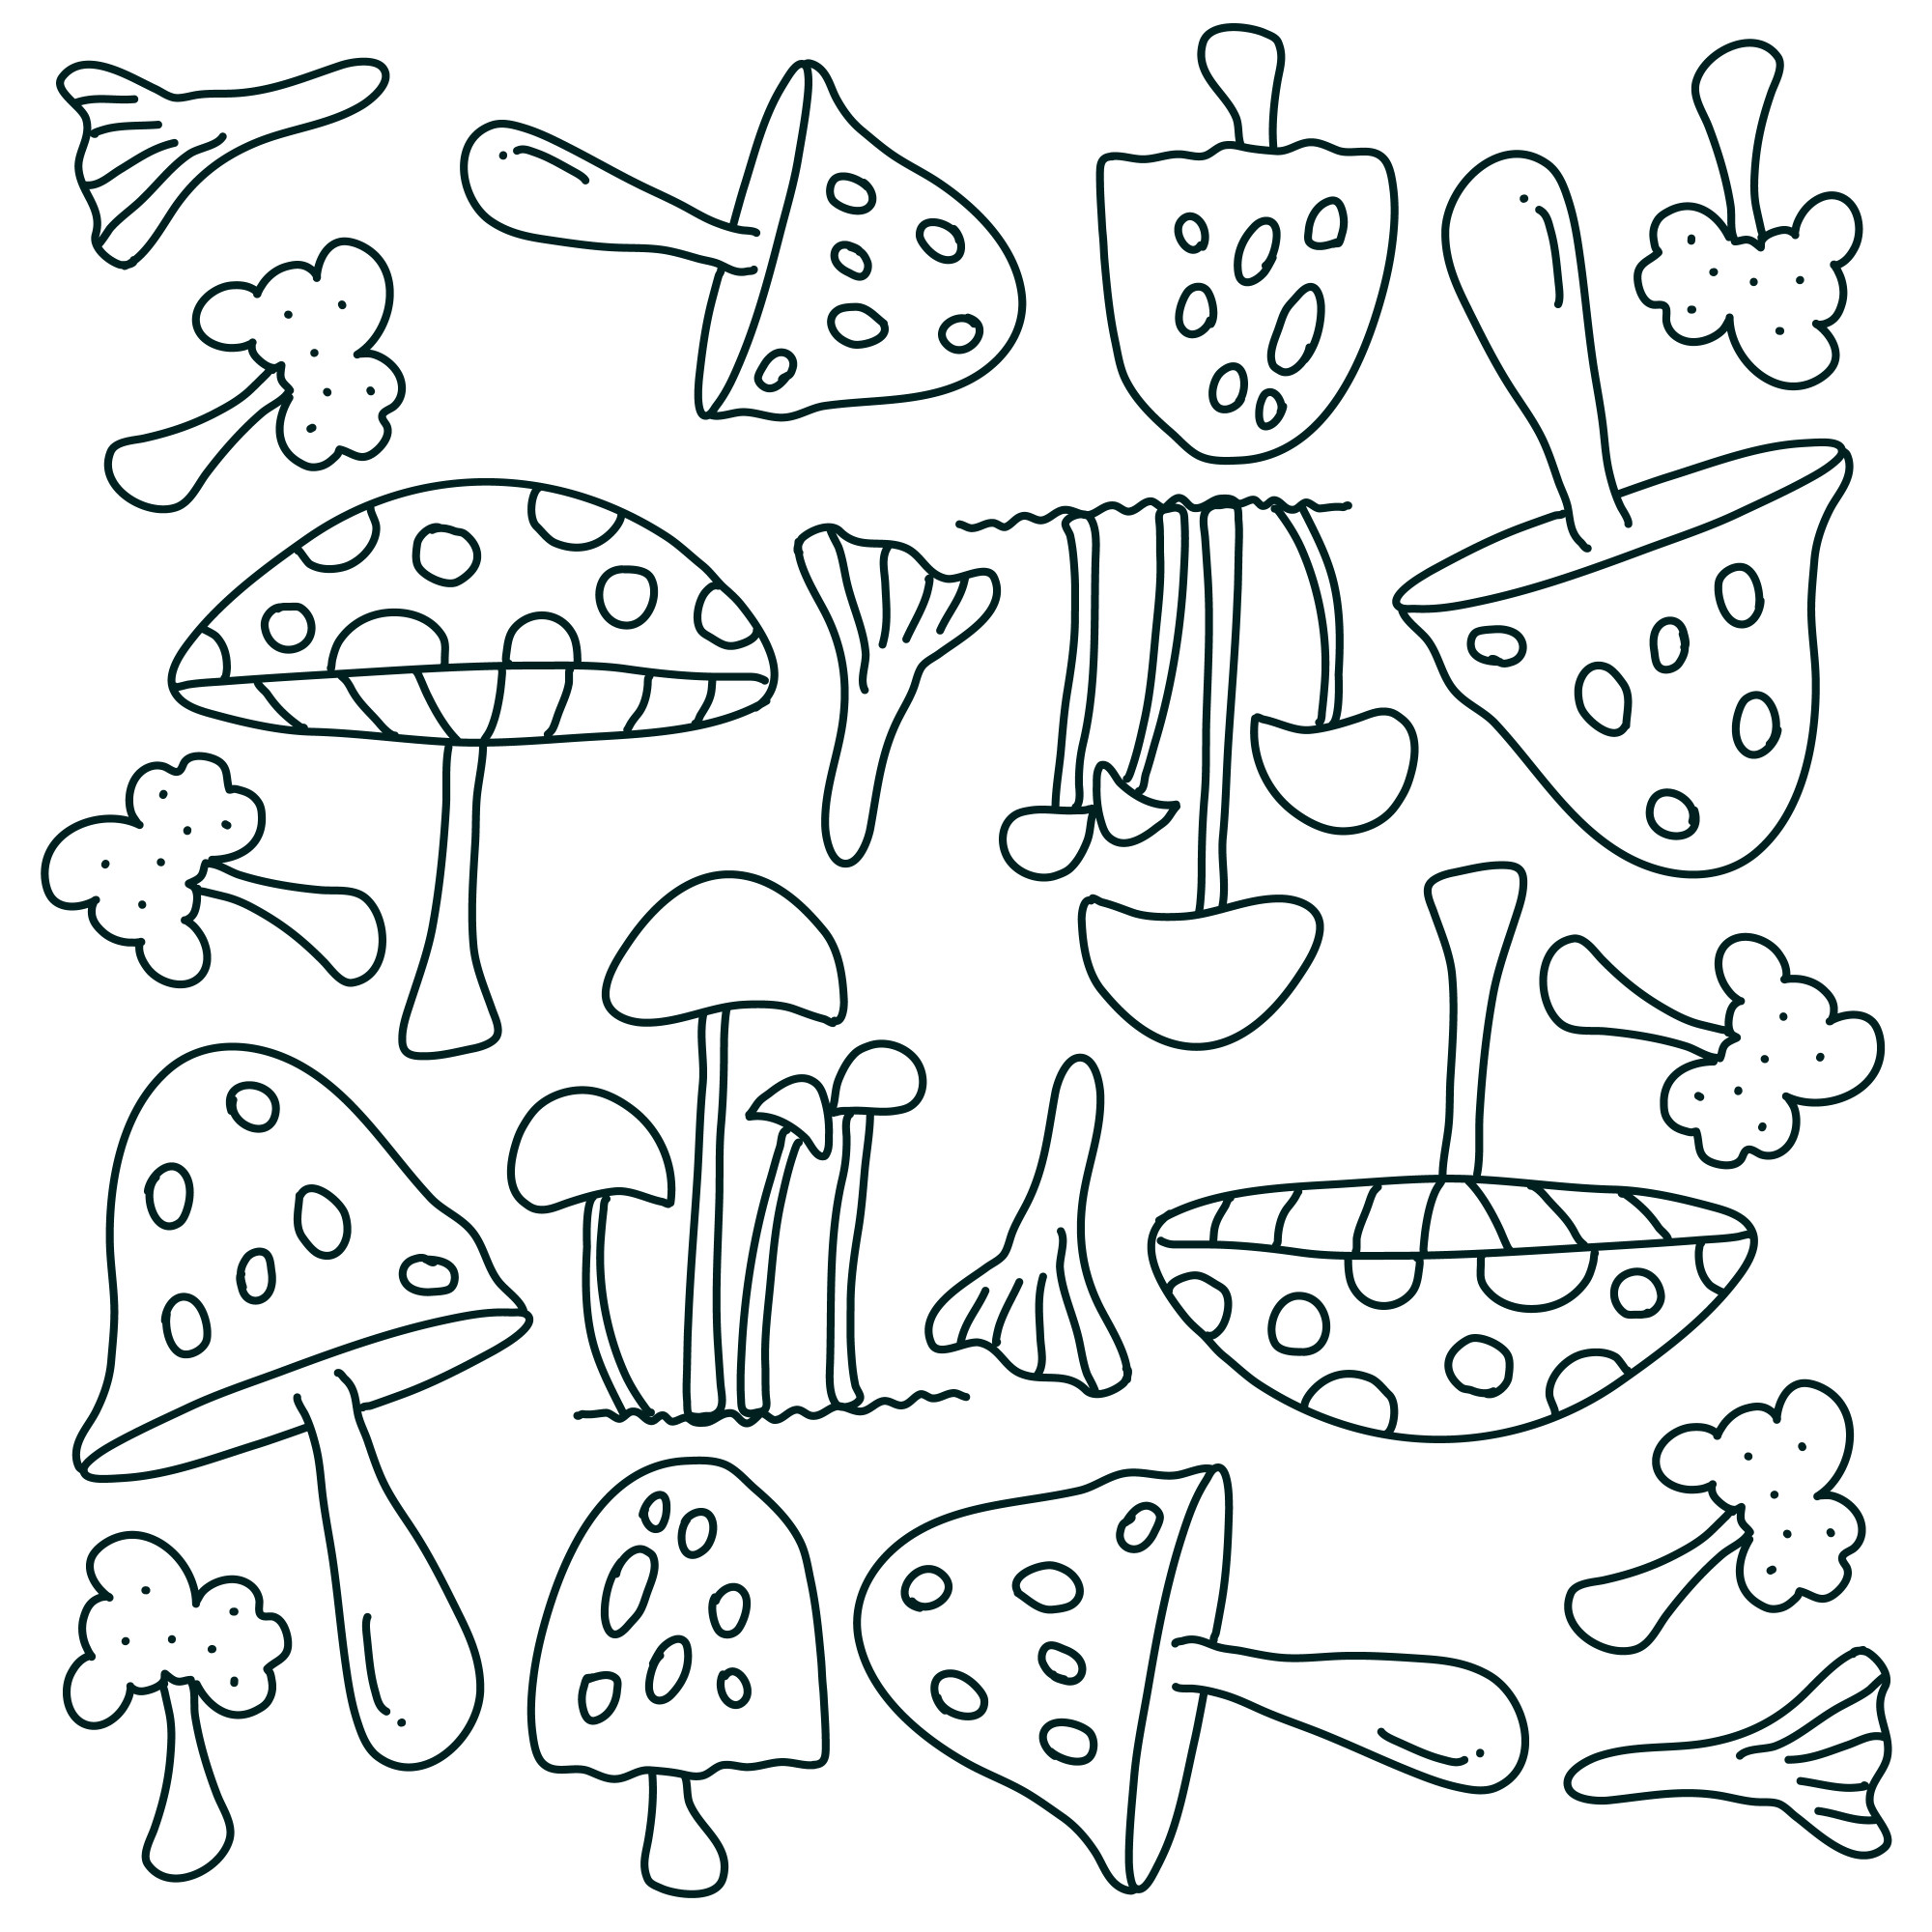 Раскраска для детей: коллекция несъедобных грибов